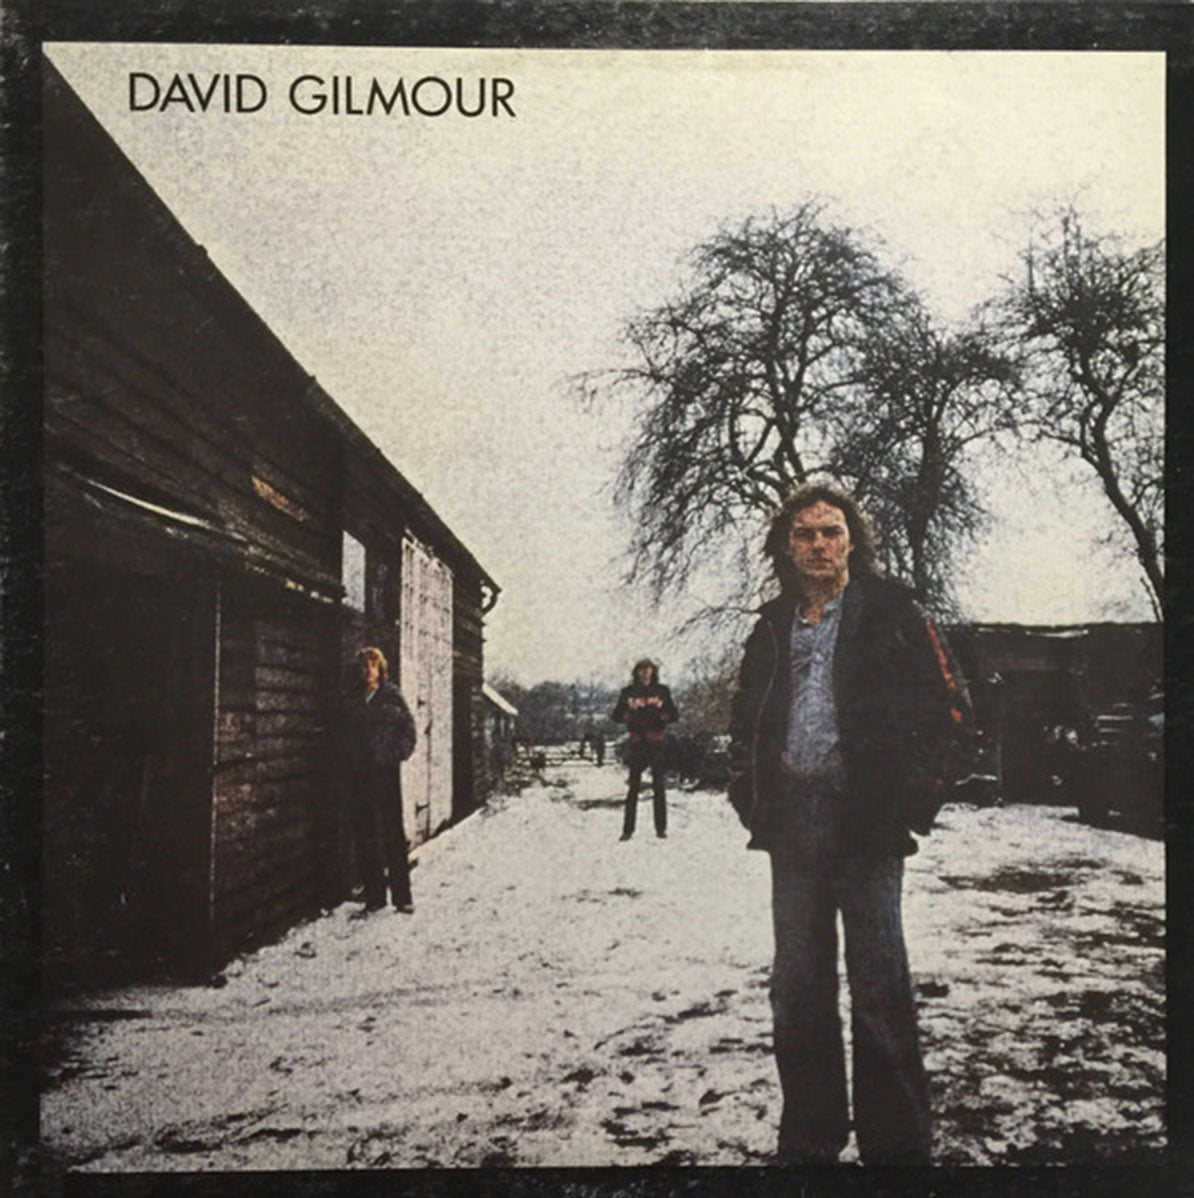 David Gilmour – David Gilmour - 1978